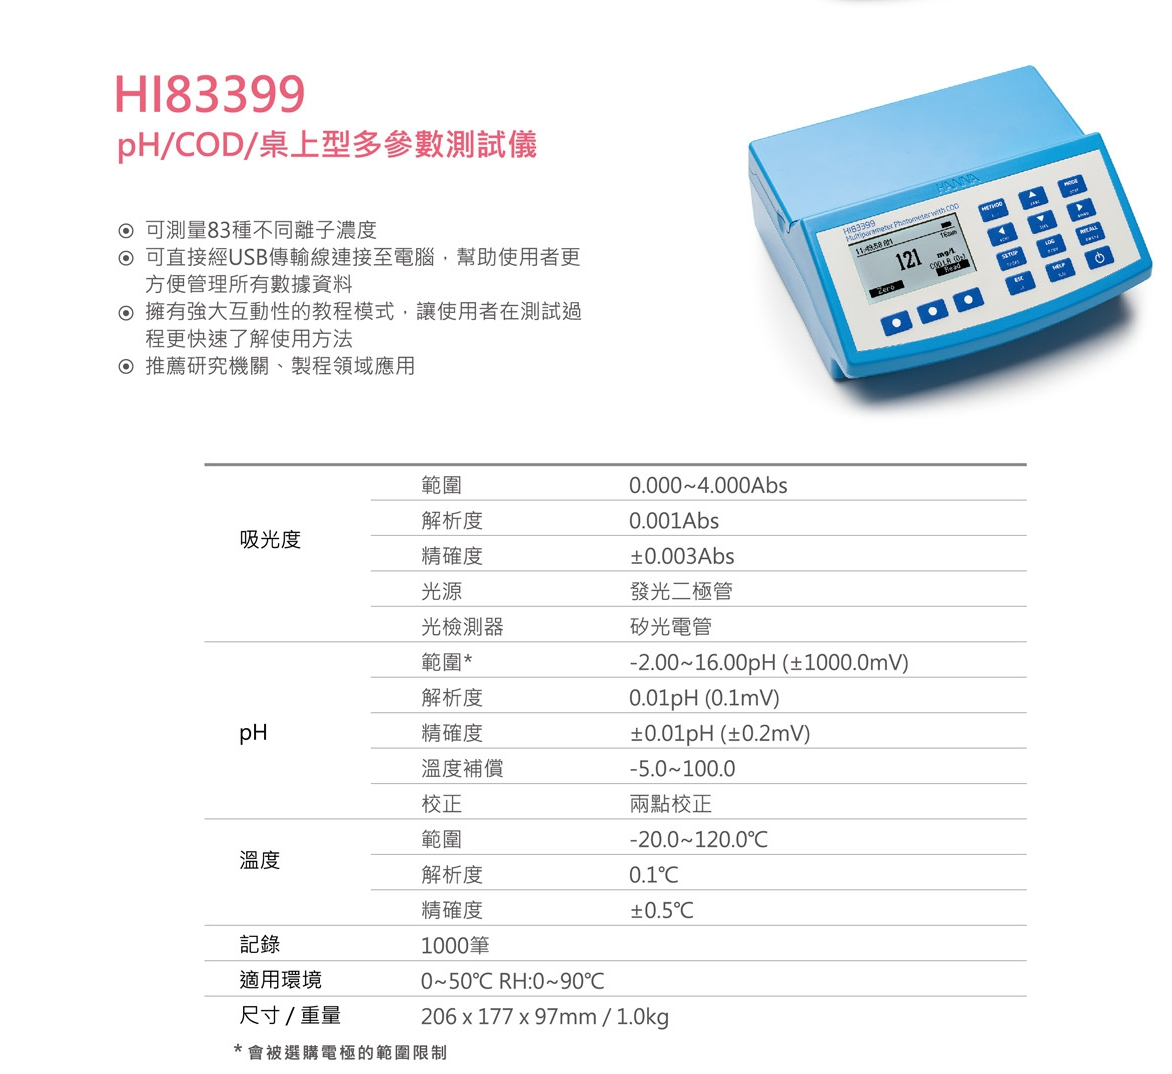 HI83399